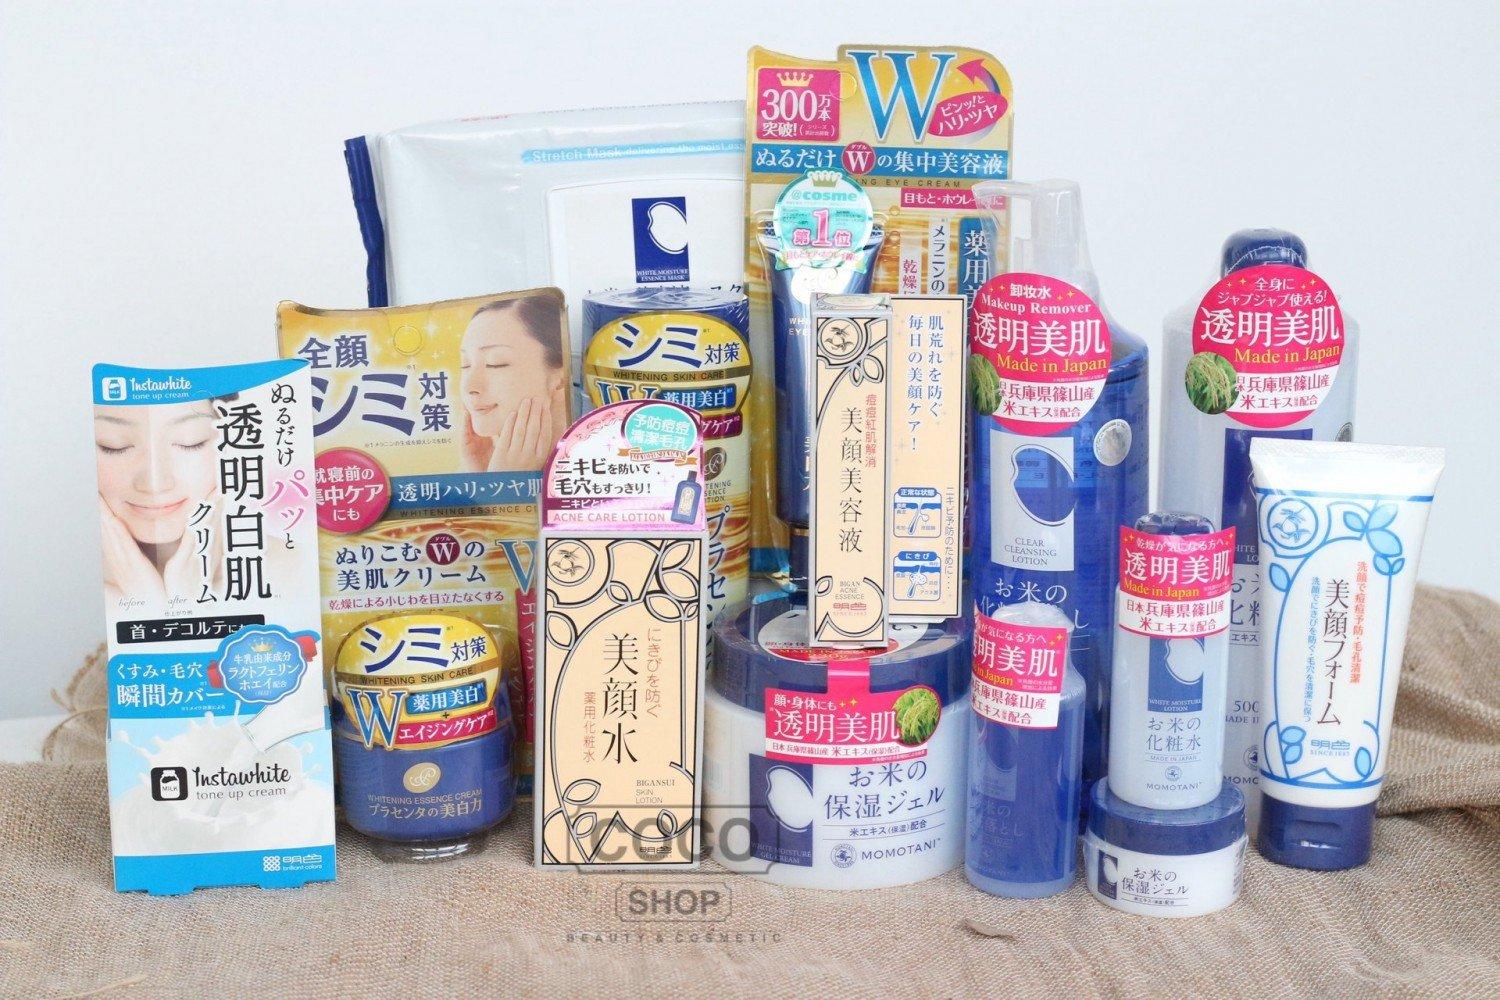 Các sản phẩm của thương hiệu Meishoku rất đa dạng và phong phú (ảnh: internet)